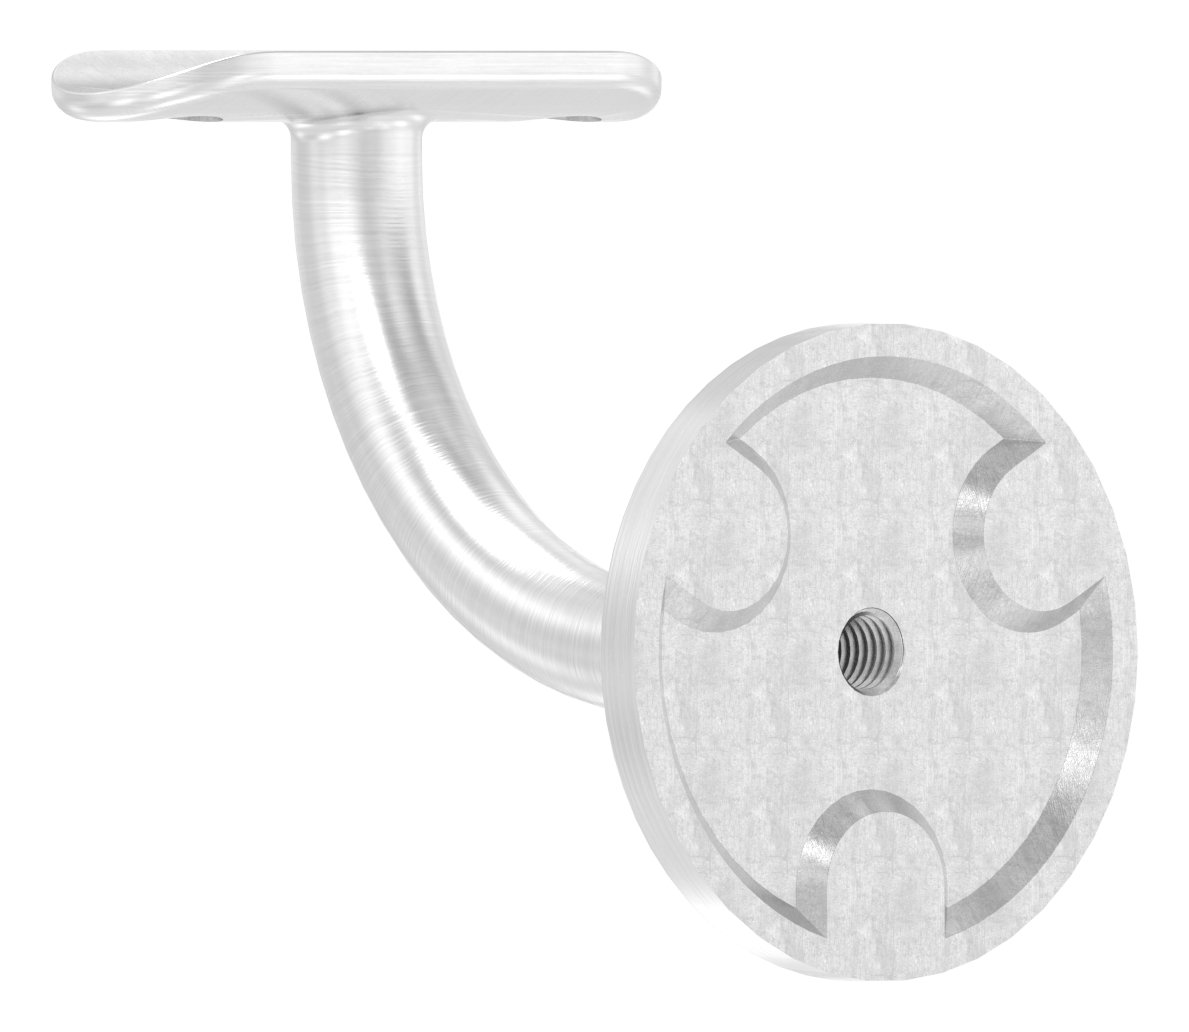 Handlaufhalter mit Handlaufanschlussplatte 42,4mm, (Ronde und Bügel verschweißt), V4A